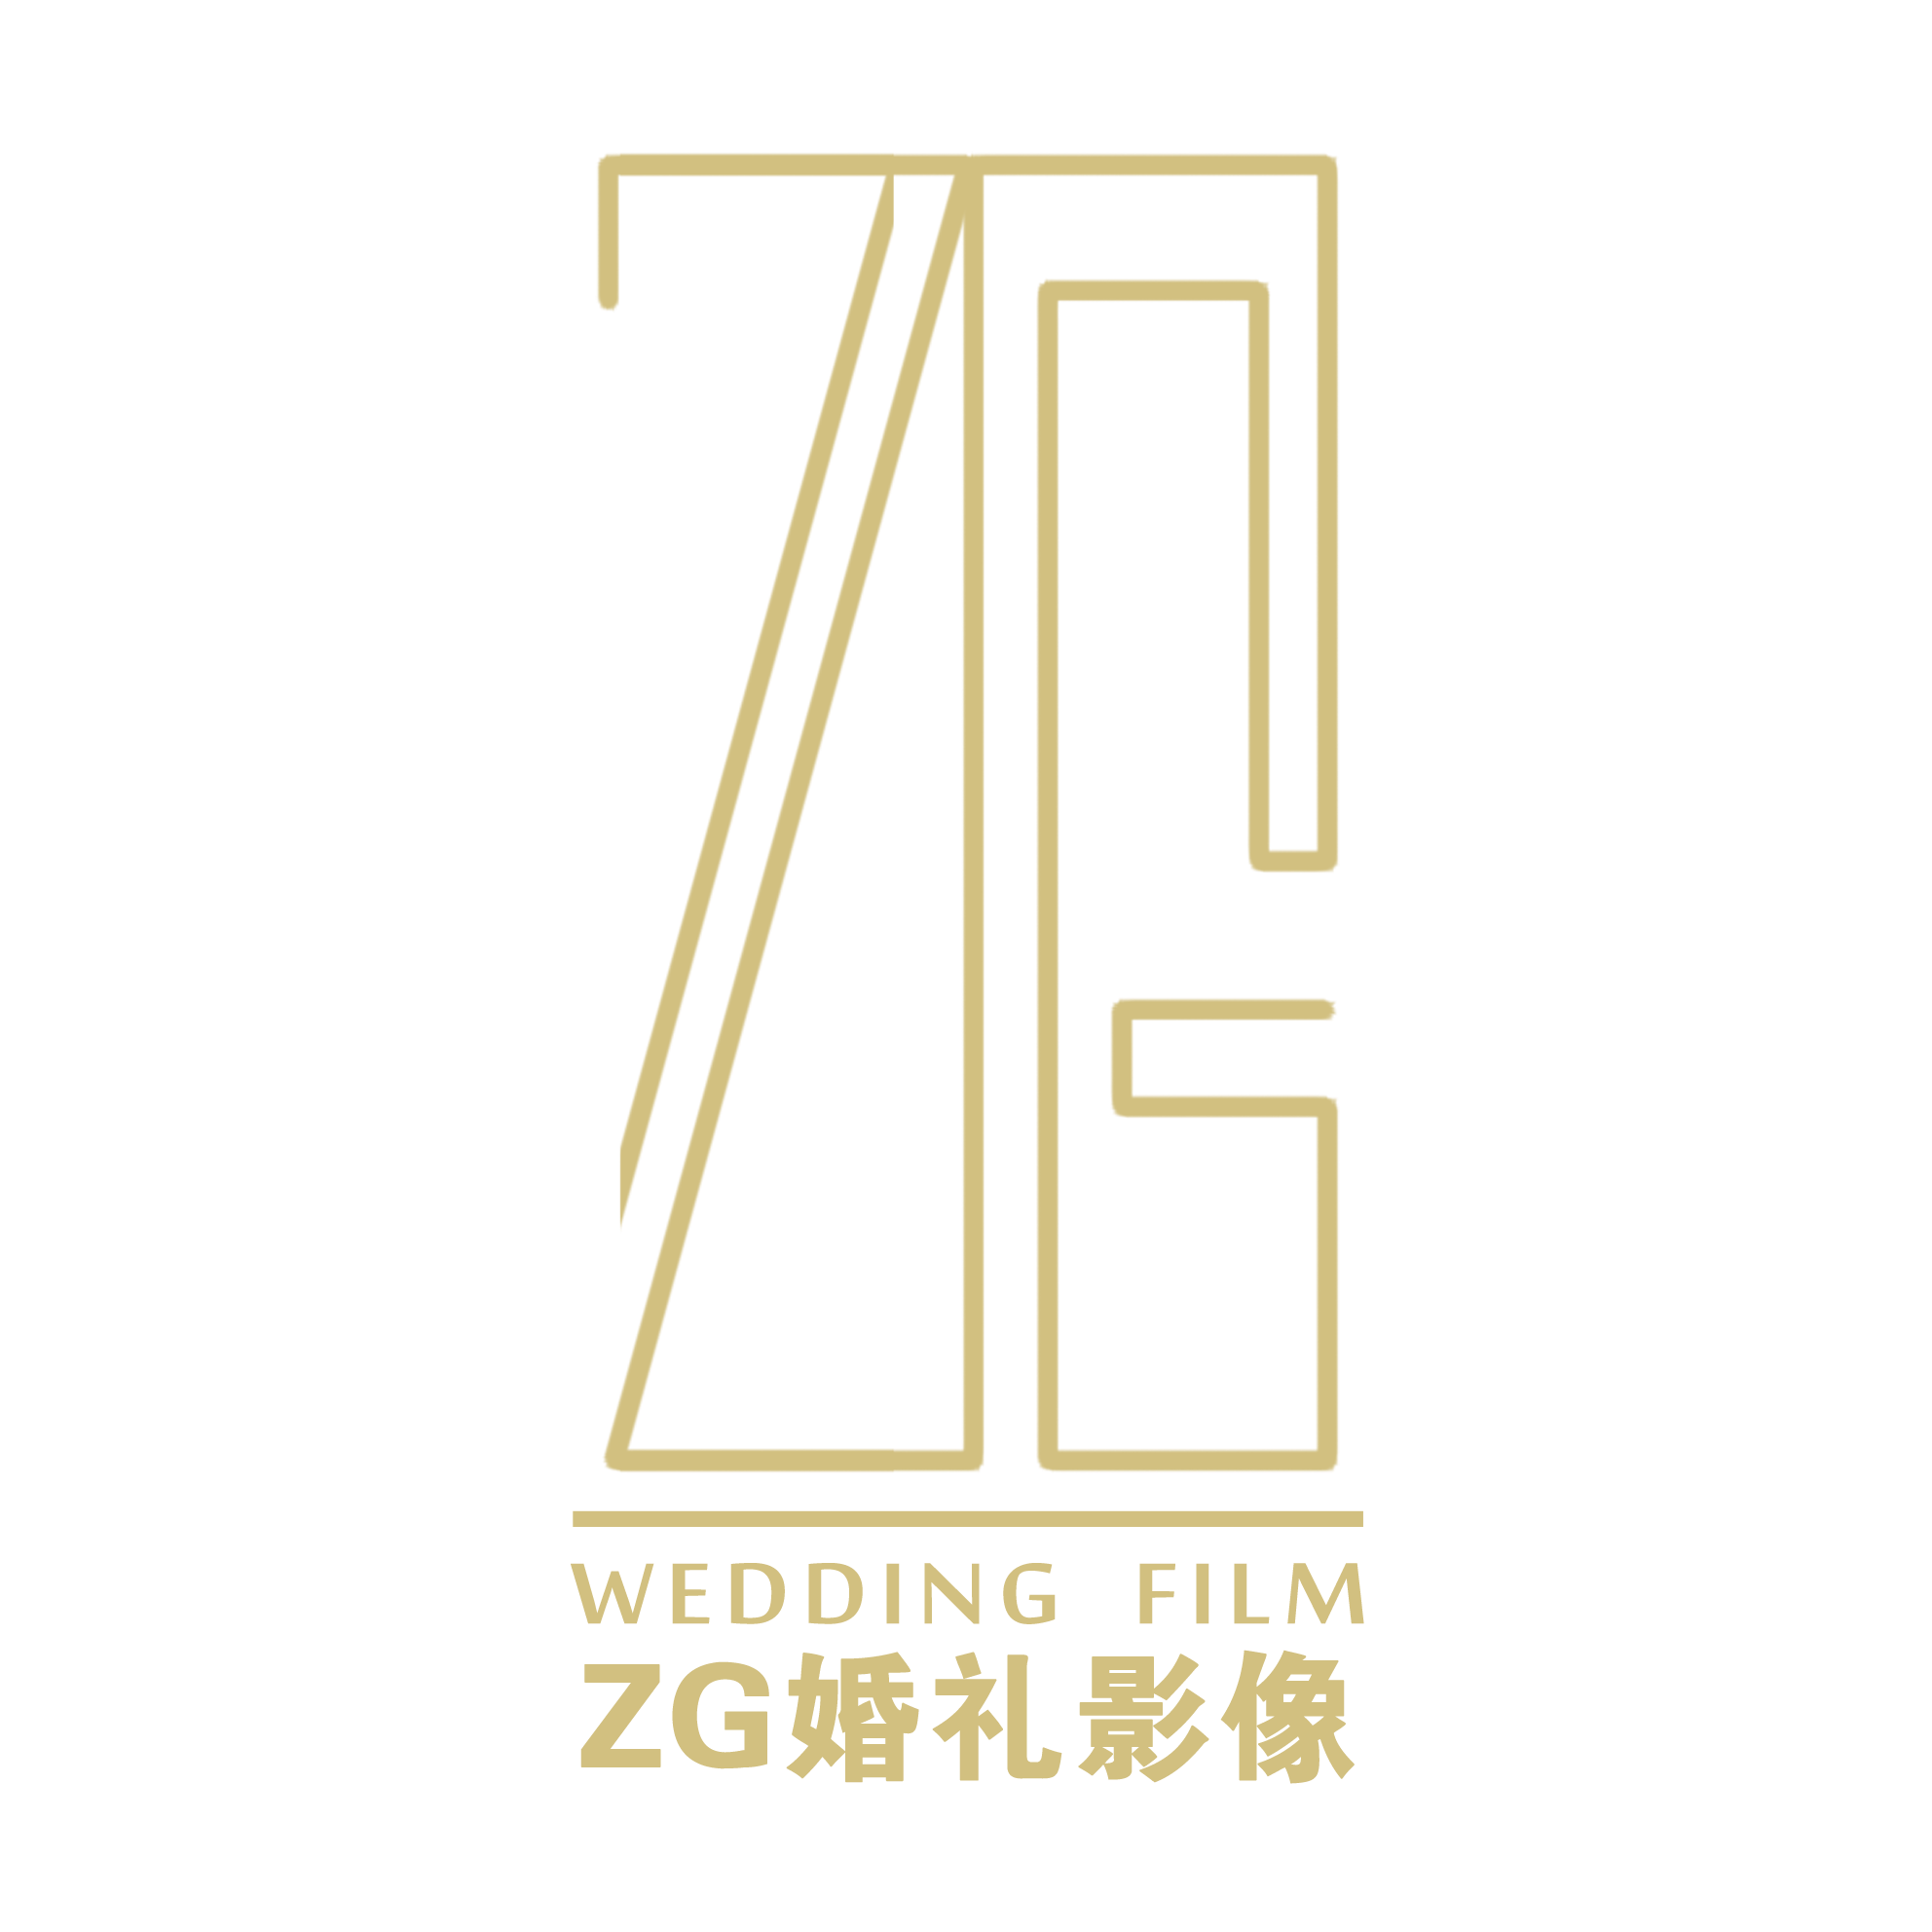 ZG婚礼电影 